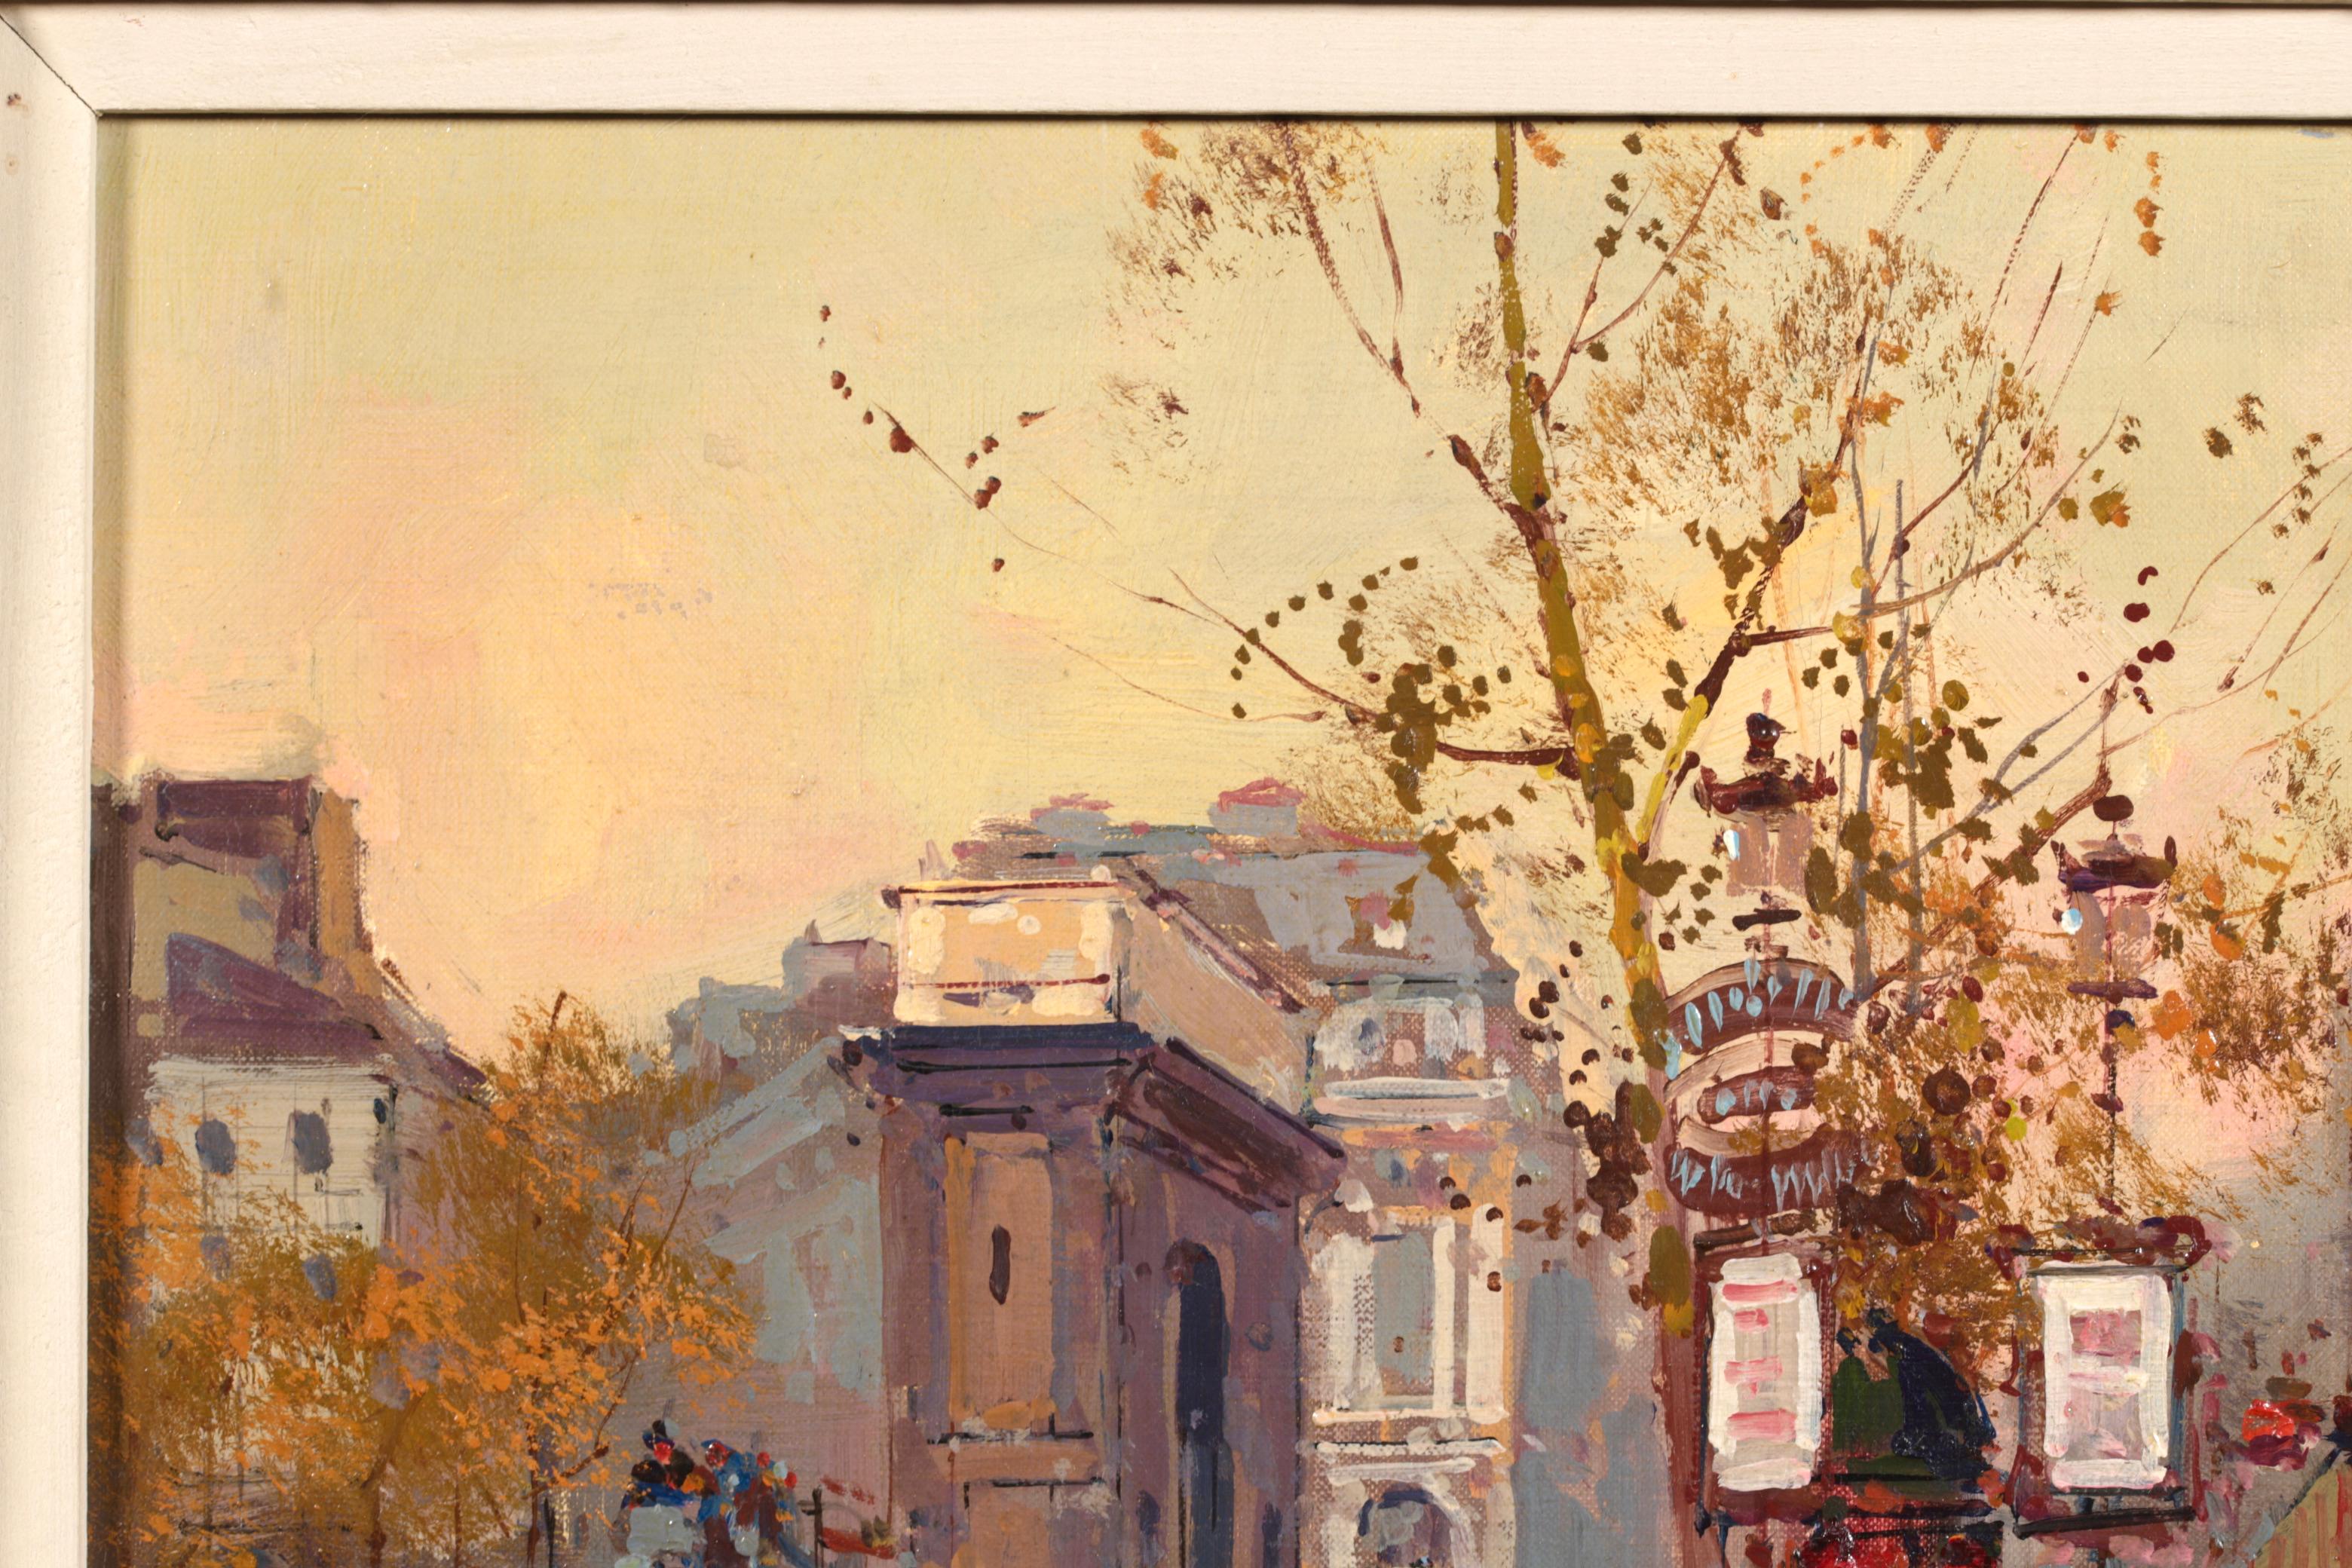 Porte de Saint Martin - Impressionist Cityscape Oil Painting by Edouard Cortes 2